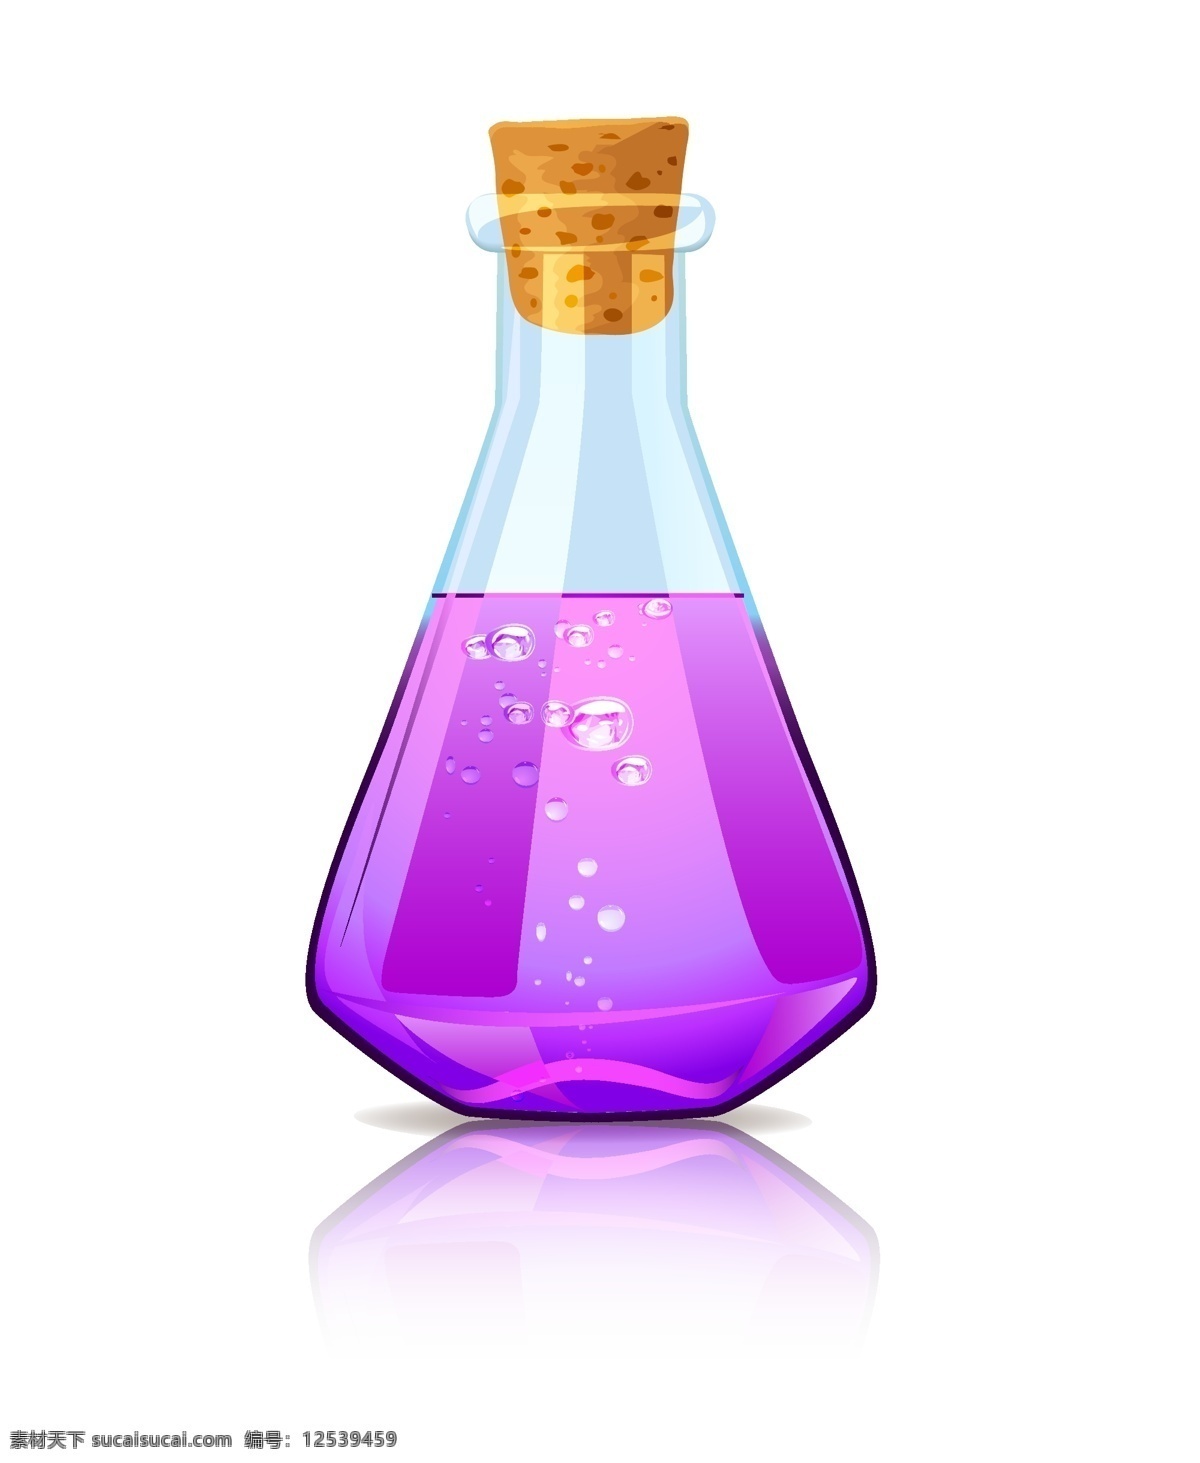 紫罗兰 魔法 锥形 瓶 锥形瓶 瓶子 紫色 矢量 实验仪器 生活百科 生活用品